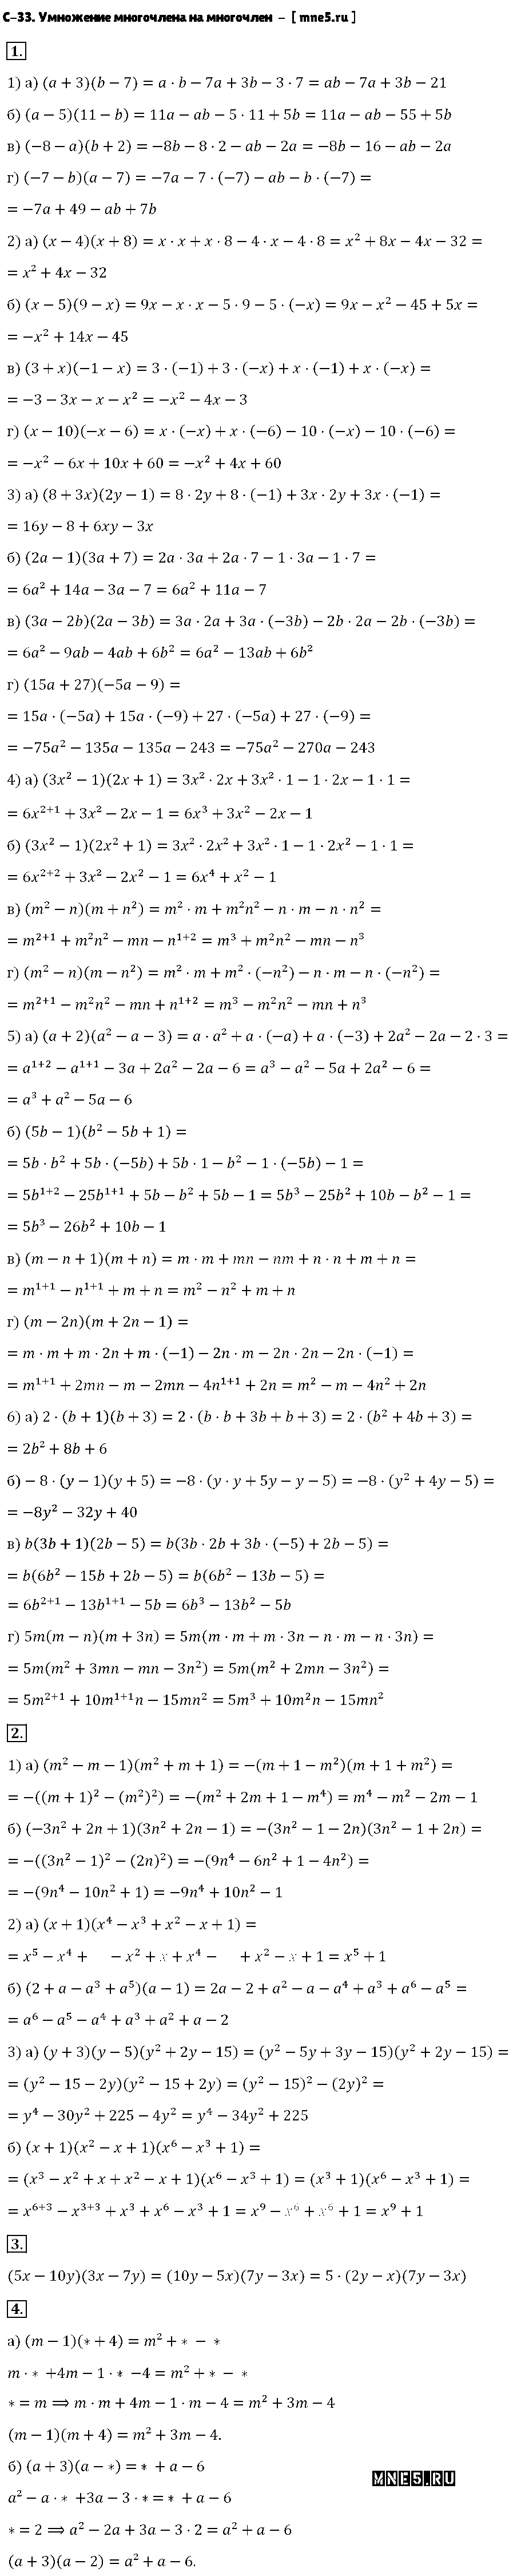 ГДЗ Алгебра 7 класс - С-33. Умножение многочлена на многочлен